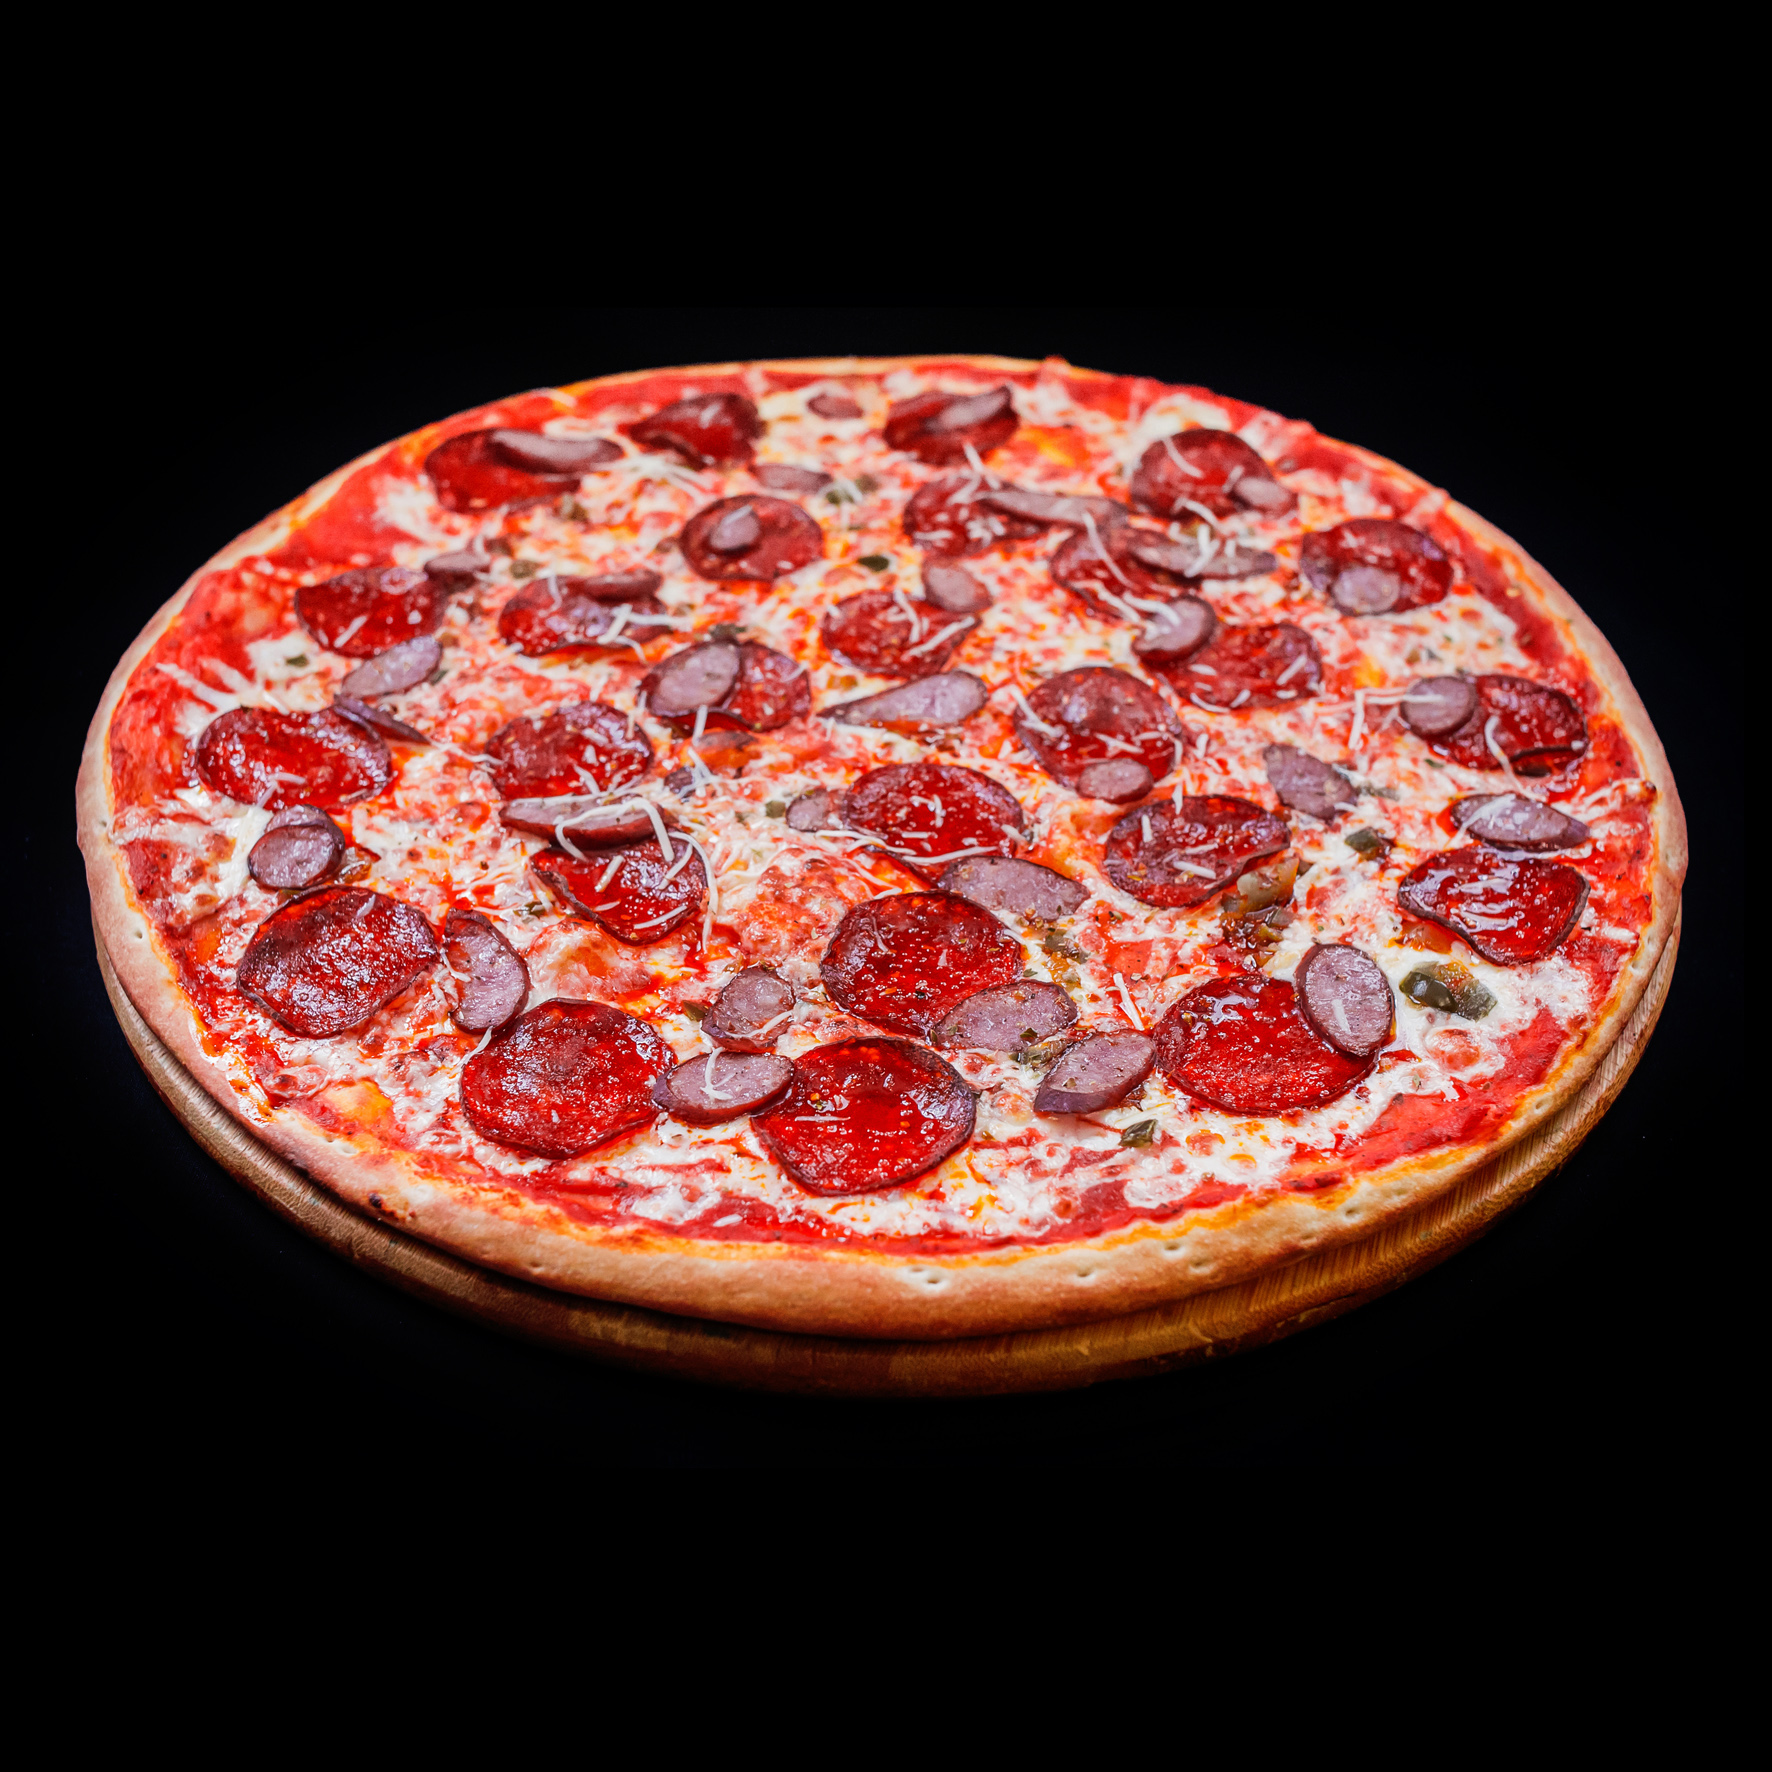 доставка пиццы в москве лучшая рейтинг фото 49